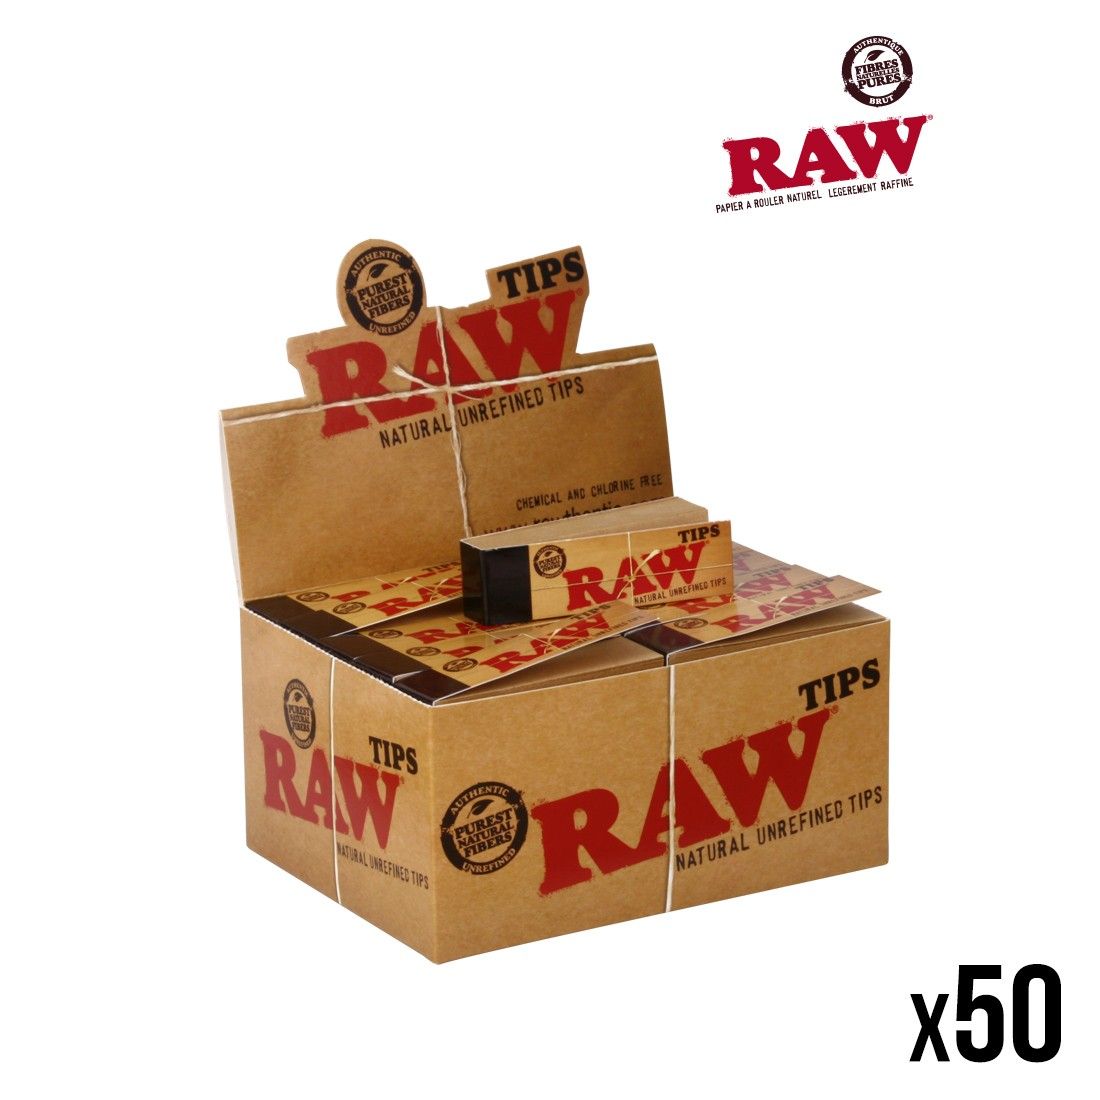 Boutique de filtres raw carton tips 100% naturel, Filtre en carton - toncar